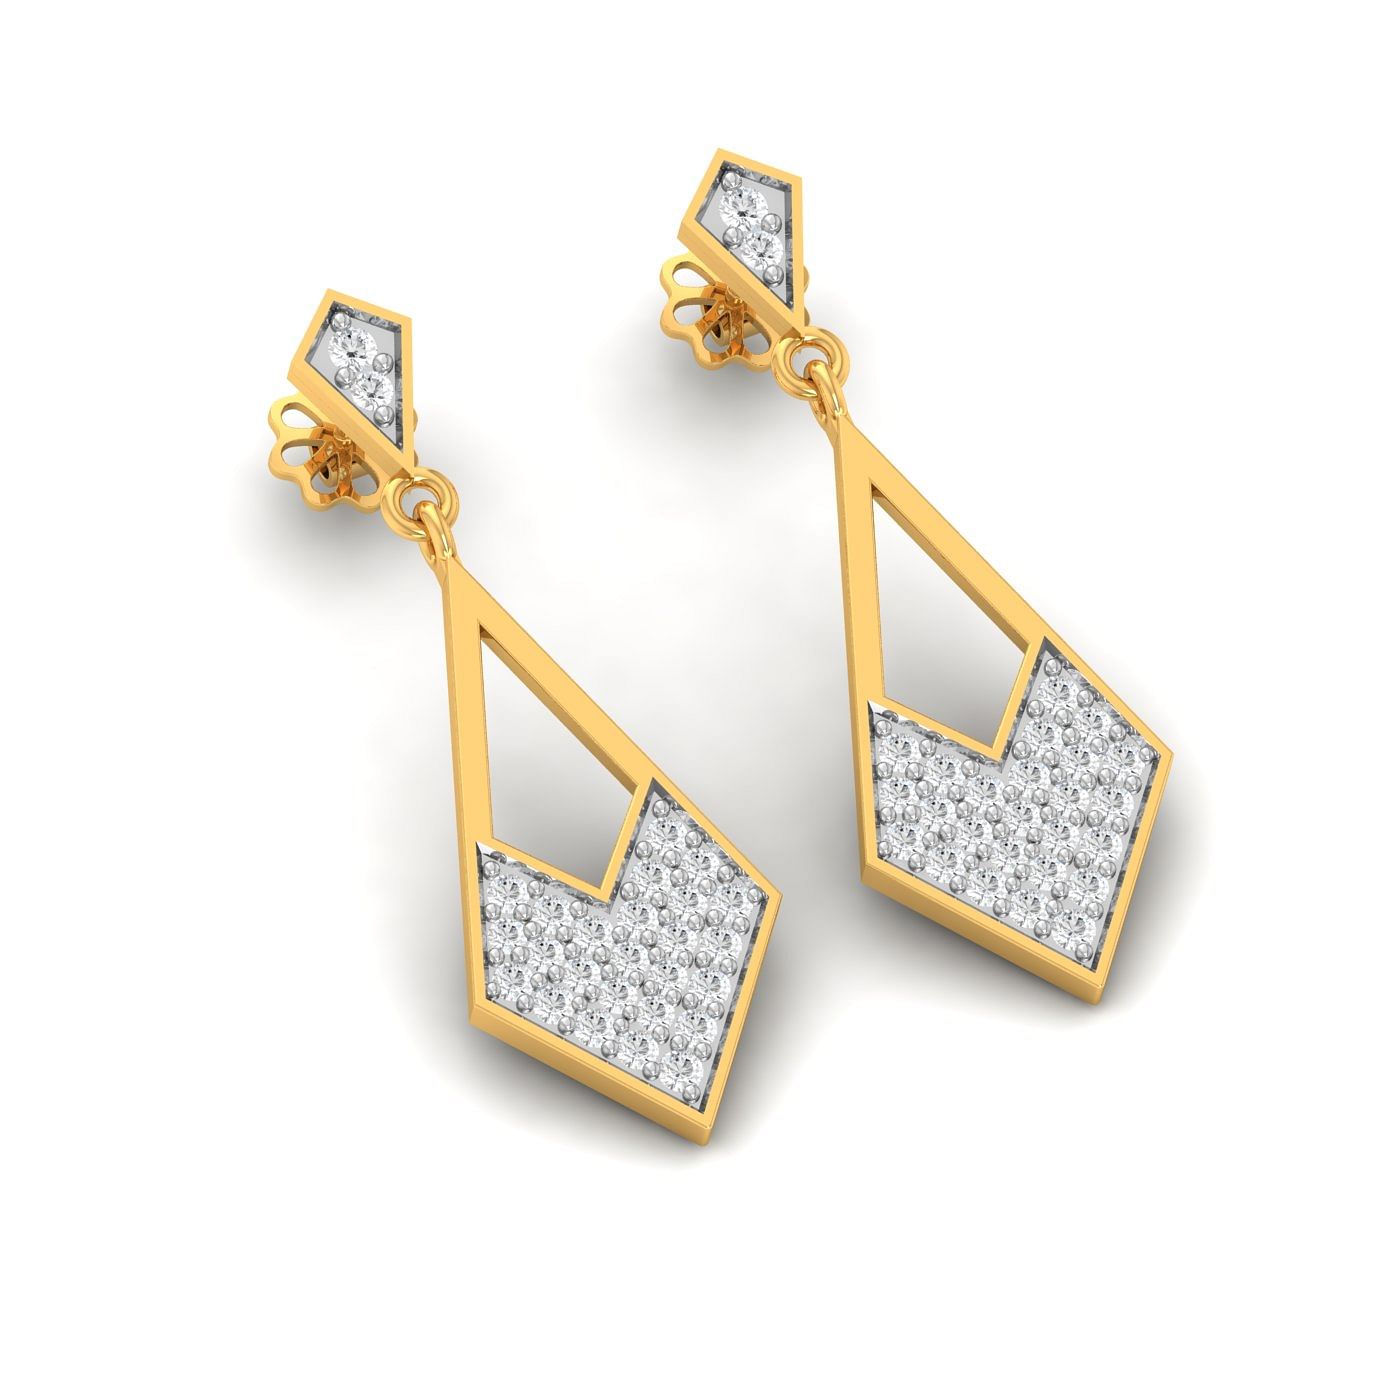 Long Drop Earring Yellow Gold Diamond Earring For Women